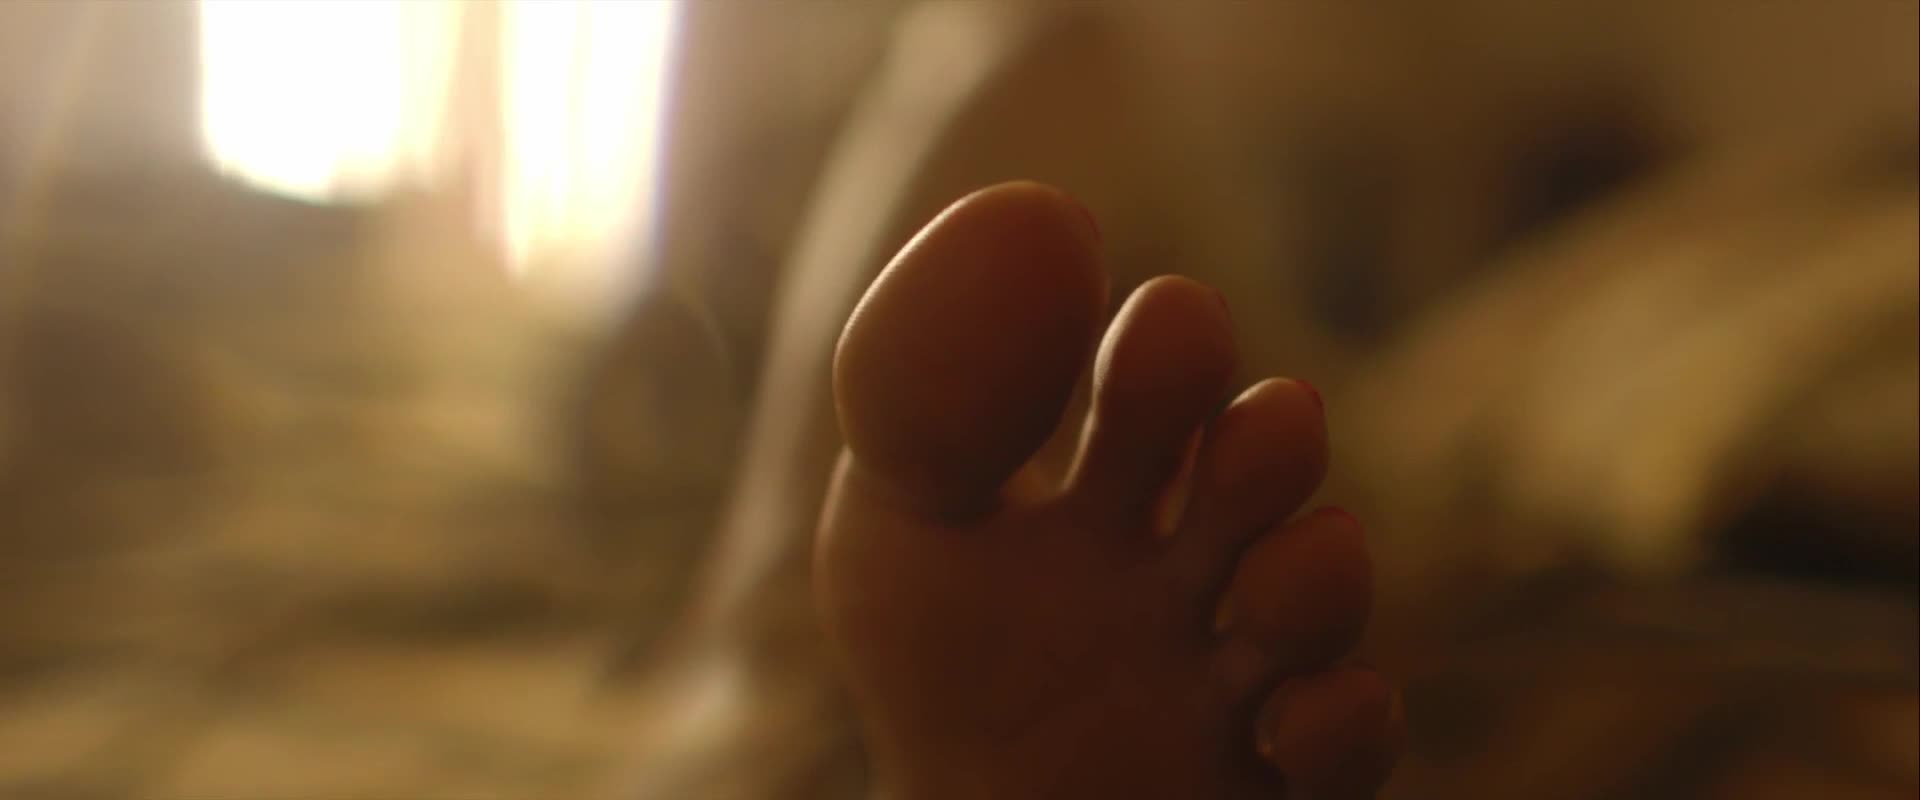 Pooja Ruparel Feet & Soles